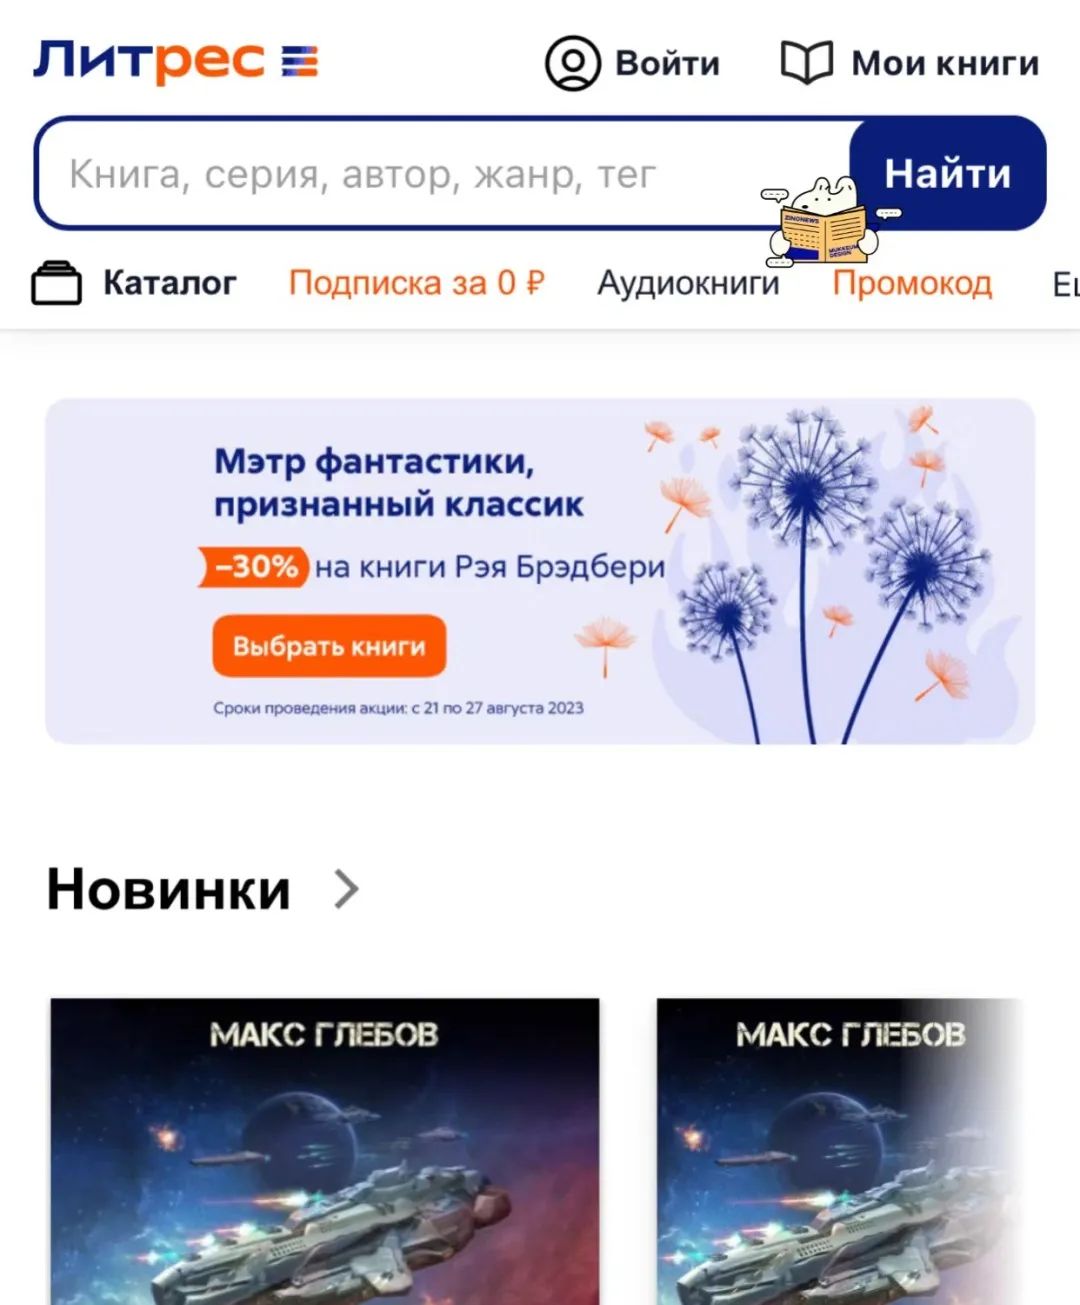 “ 俄罗斯留学实用干货分享 | 怎么线上购买俄语书籍/教材 ”